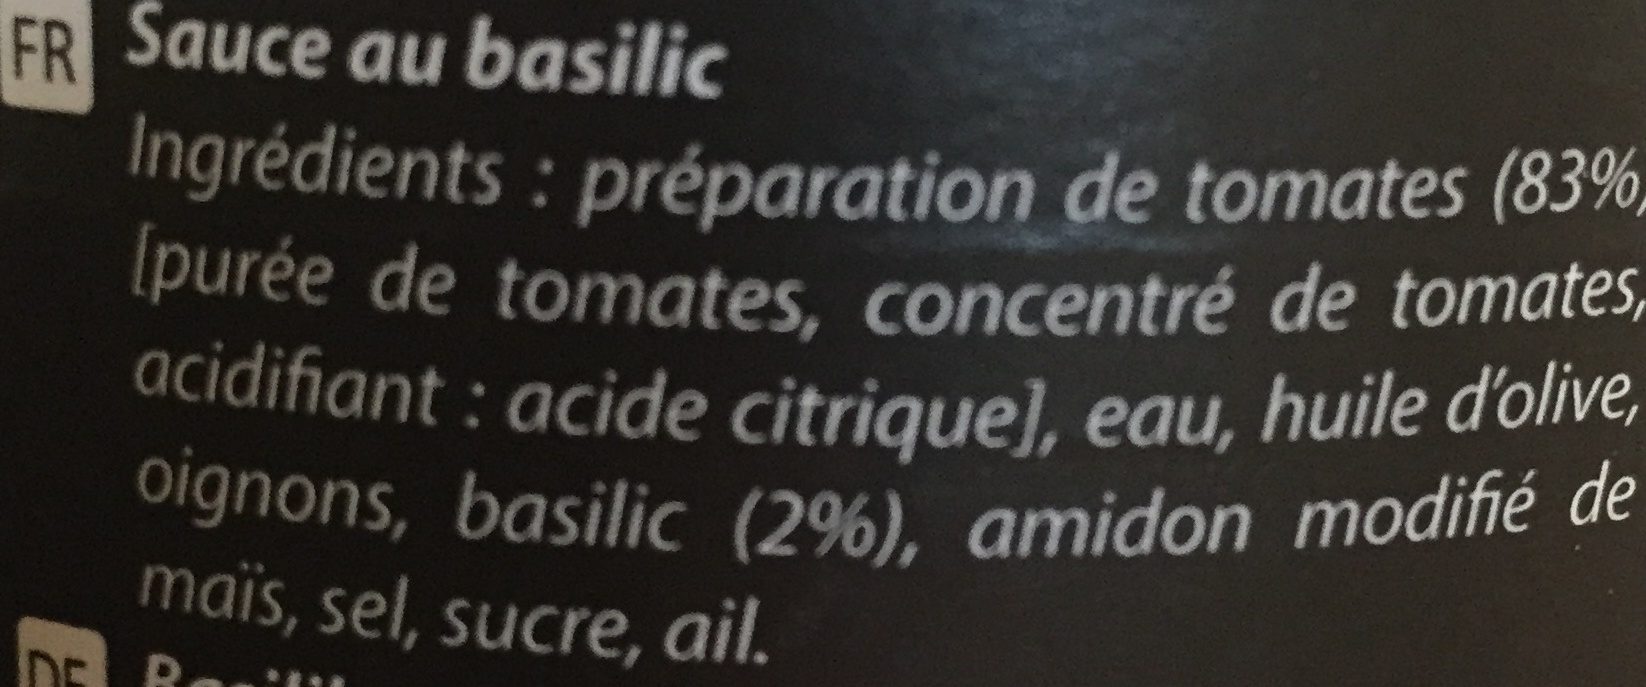 Sauce au basilic - Ingrédients